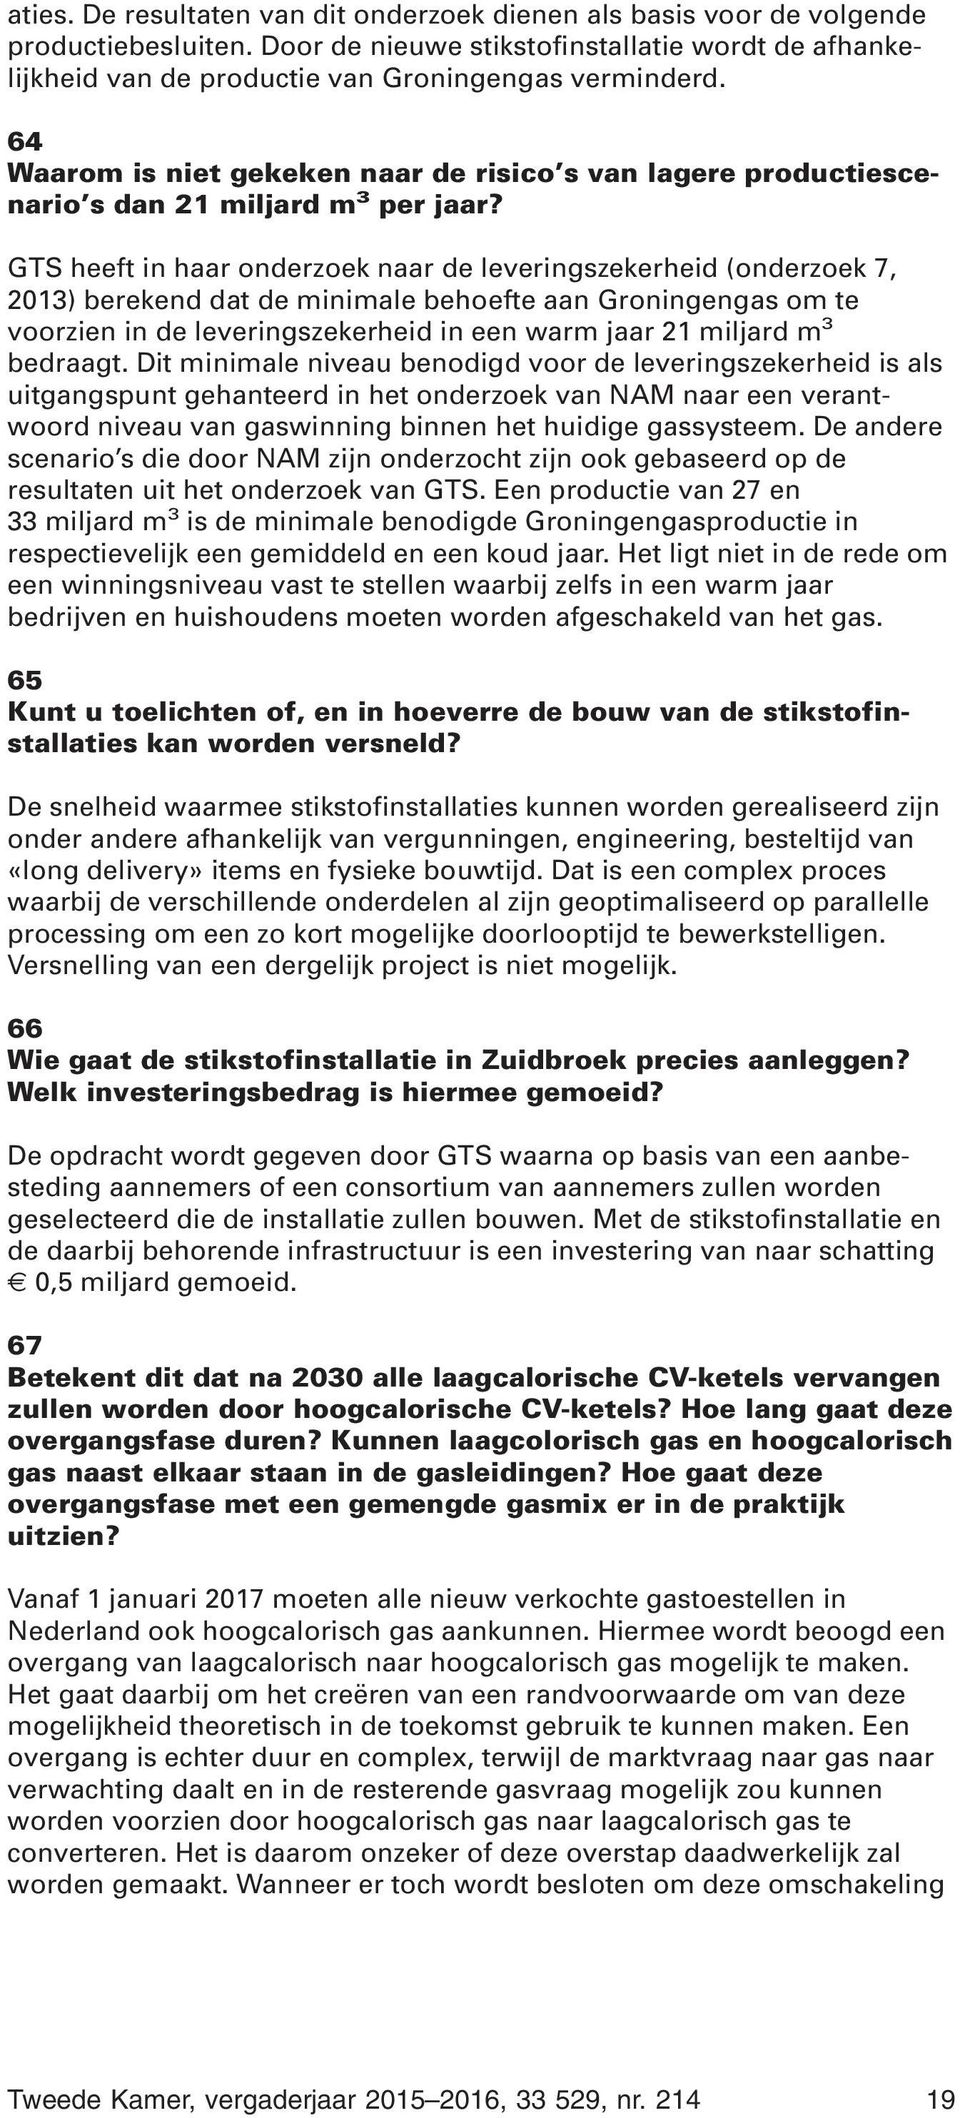 GTS heeft in haar onderzoek naar de leveringszekerheid (onderzoek 7, 2013) berekend dat de minimale behoefte aan Groningengas om te voorzien in de leveringszekerheid in een warm jaar 21 miljard m 3